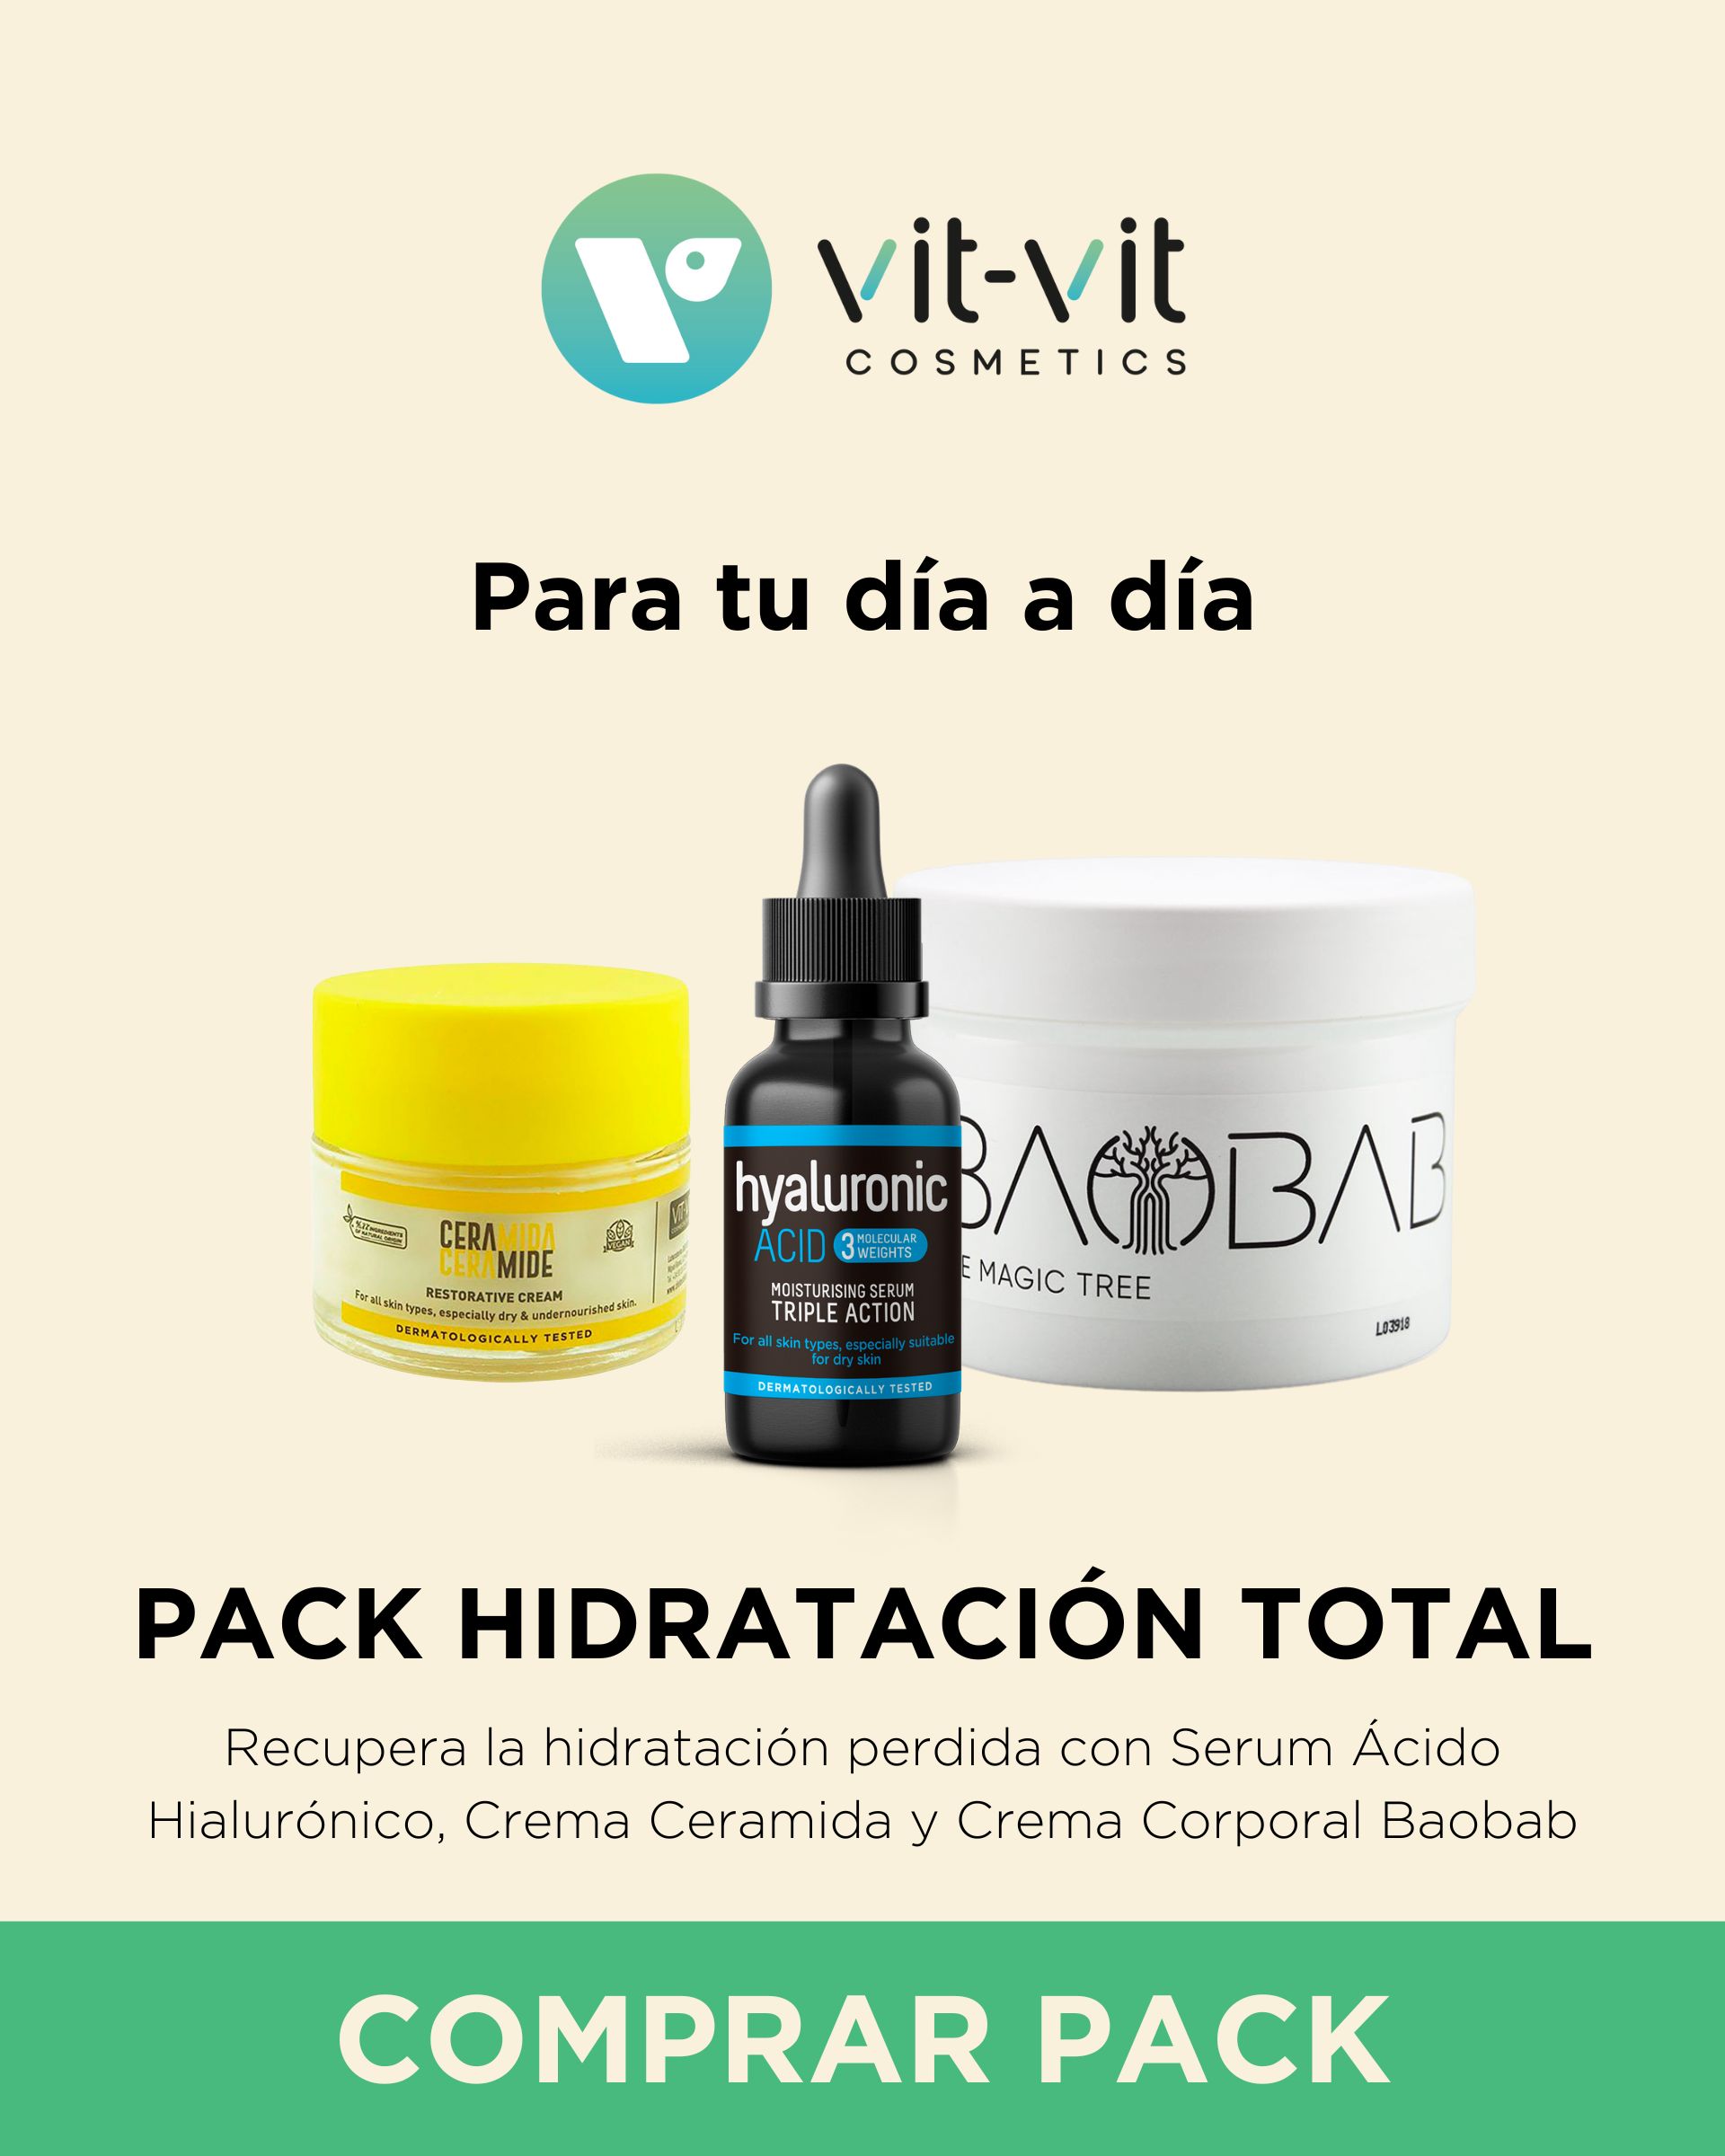 Para tu día a día, Pack Hidratación Total para el cuidado facial y corporal: Serum Ácido Hialurónicom Crema Ceramida y Crema Corporal Baobab